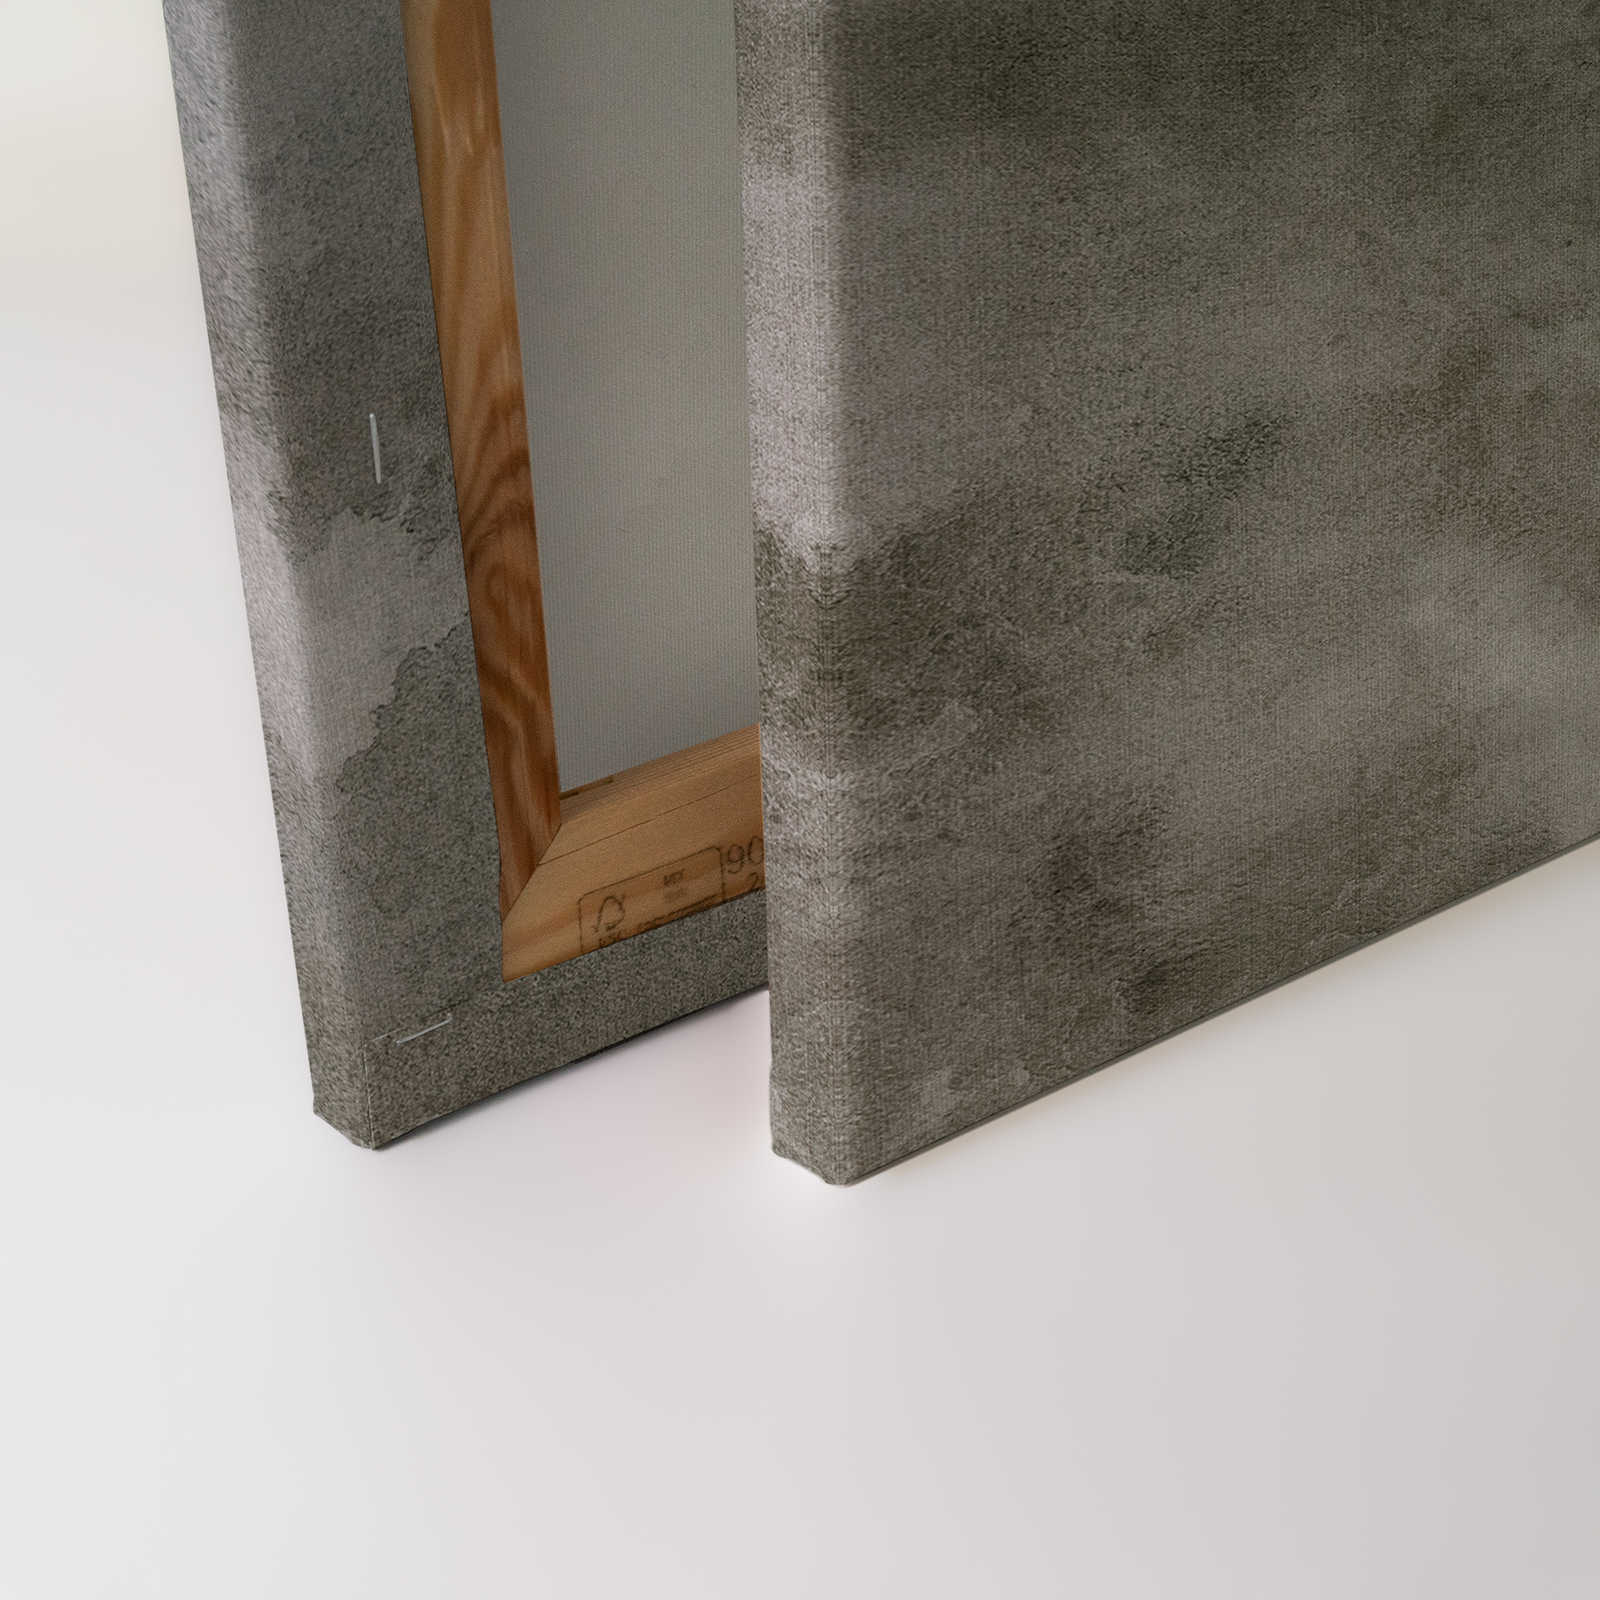             Acquerelli 1 - Quadro su tela ad acquerello grigio in lino naturale - 1,20 m x 0,80 m
        